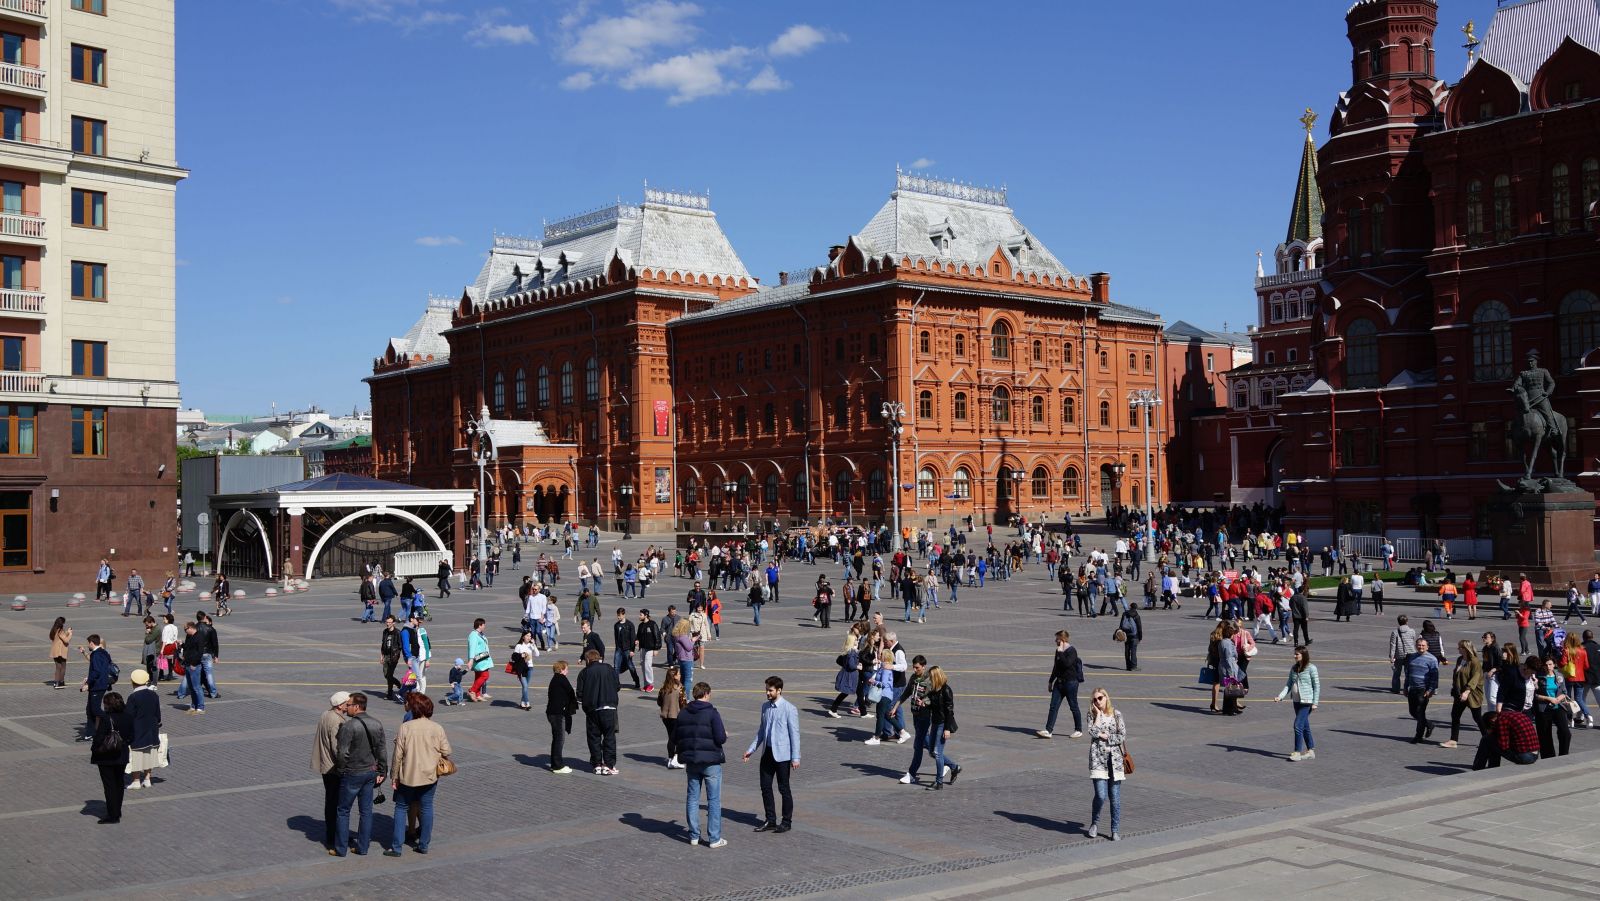 манежная площадь в москве фото с описанием